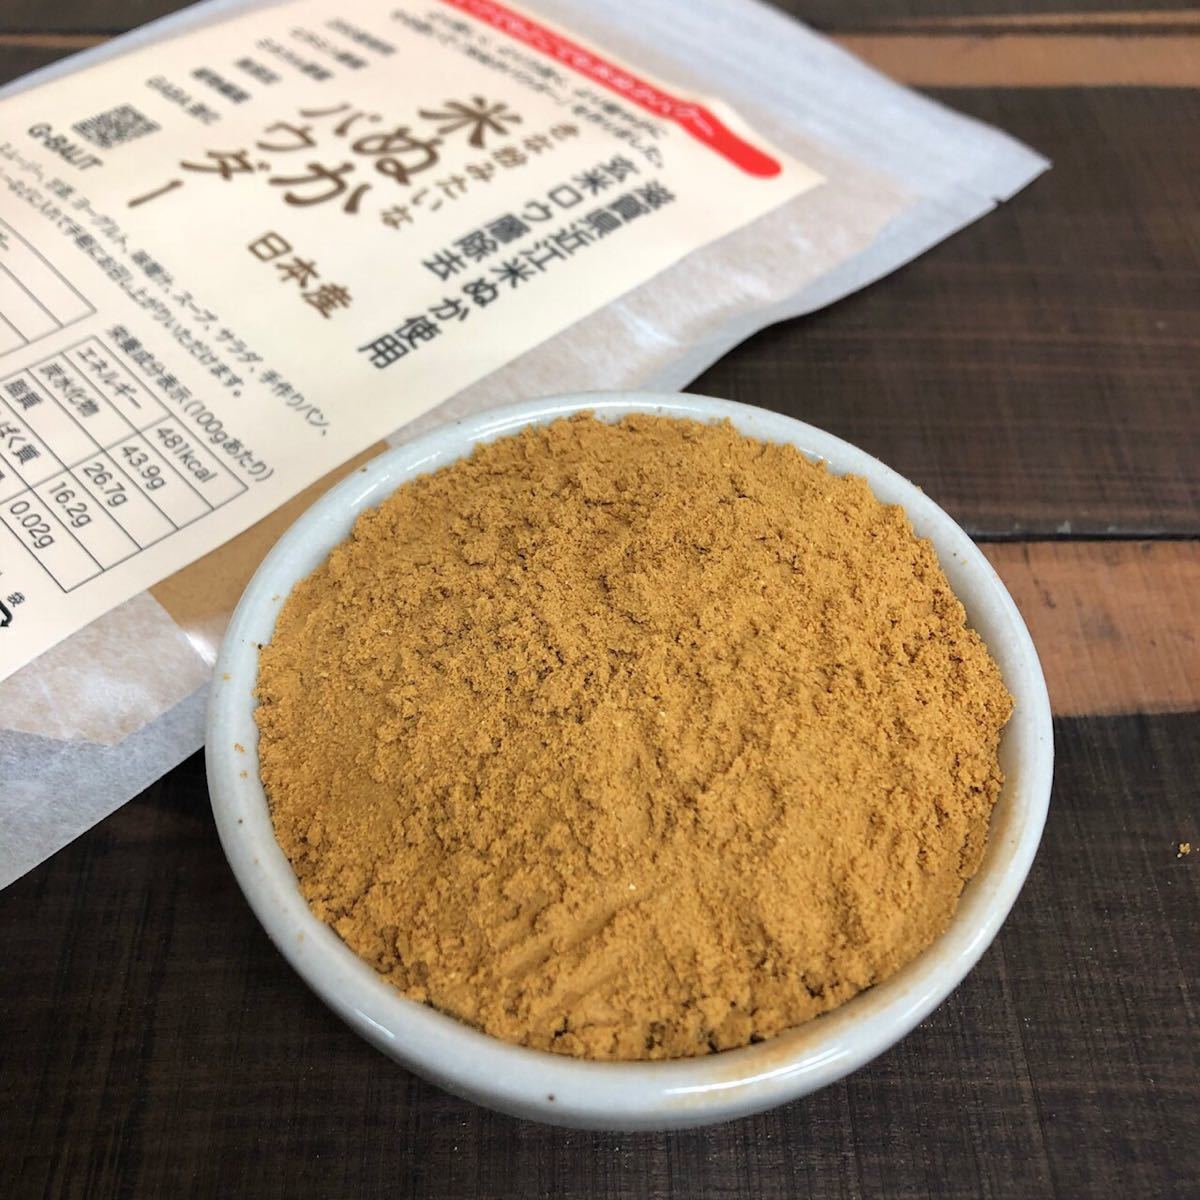 きな粉のような米ぬかパウダー 150g 米ぬか 米糠 滋賀県産近江米ぬか使用 UP HADOO 